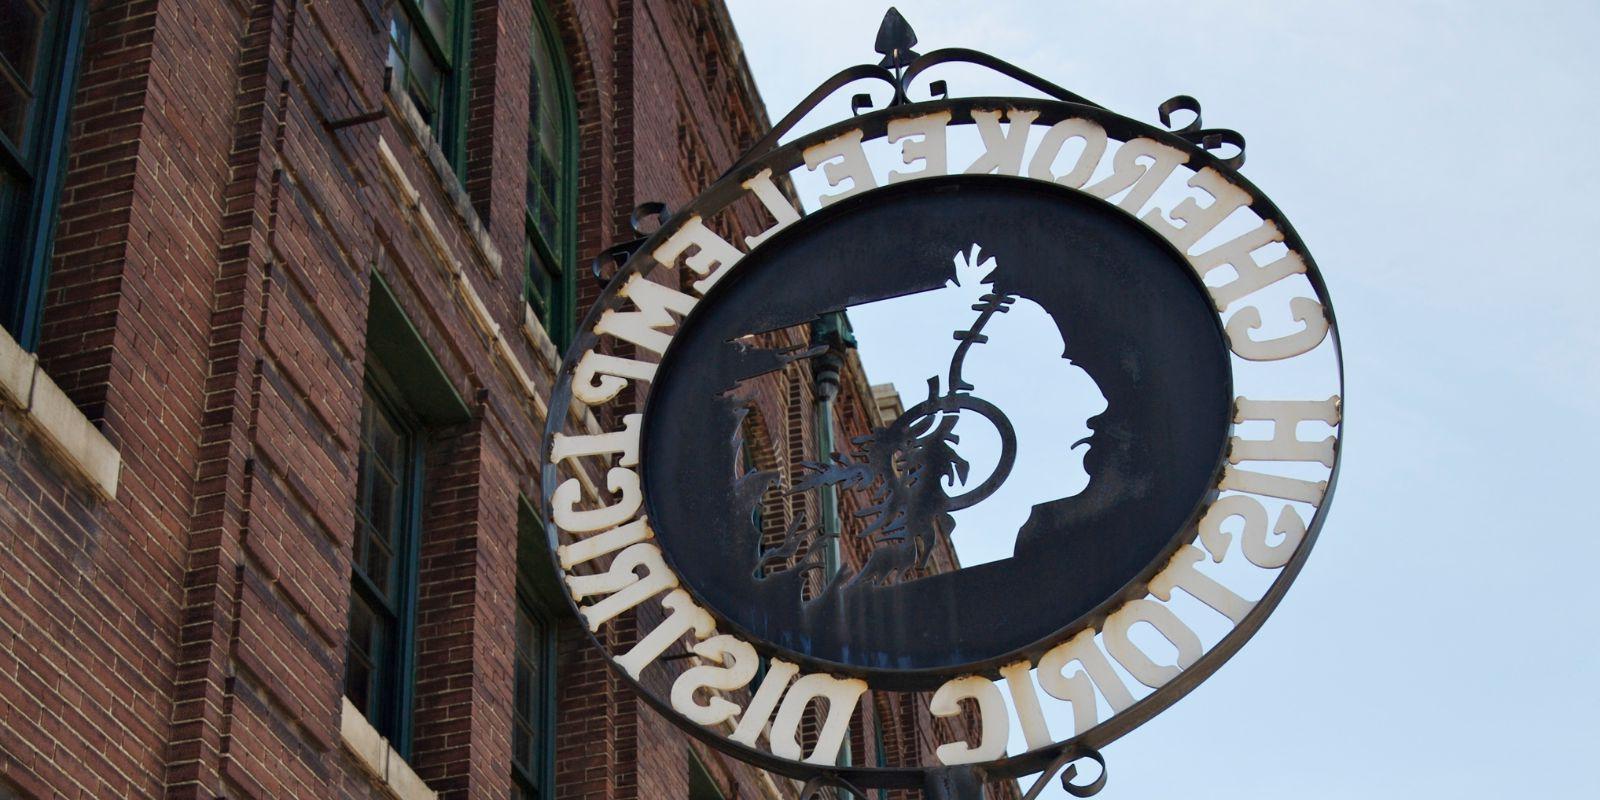 特色标志标志着切罗基古董街的六个街区及其独立拥有和经营的场所.